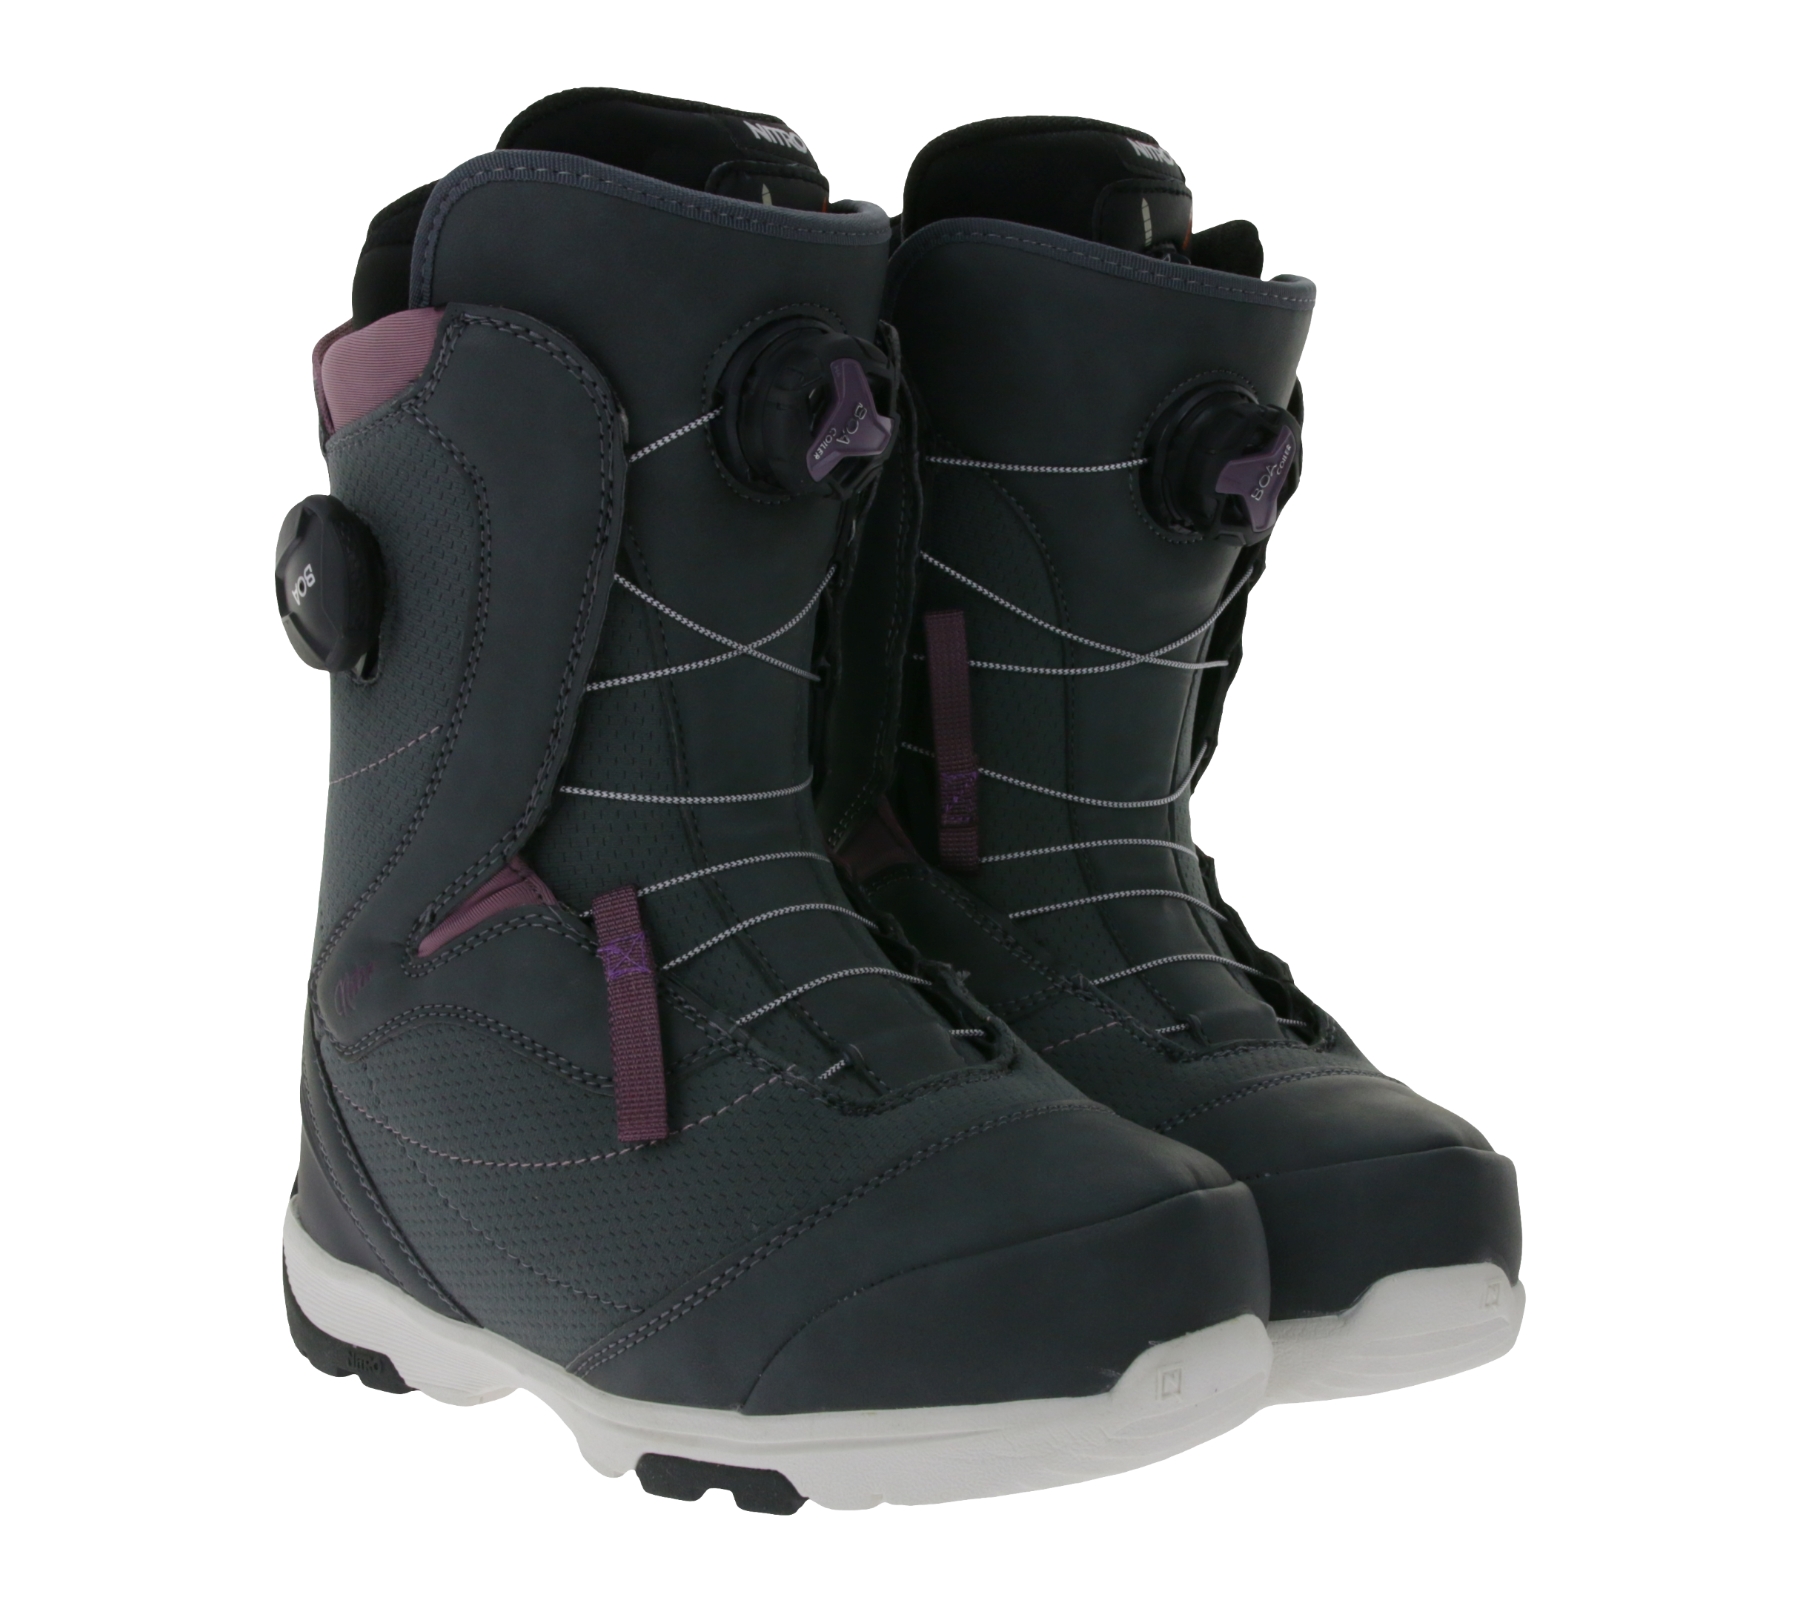 NITRO Cypress Boa Damen Snowboard-Boots mit dämpfender EVA-Sohle Wintersport-Stiefel 848572-003 Grau/Violett von NITRO